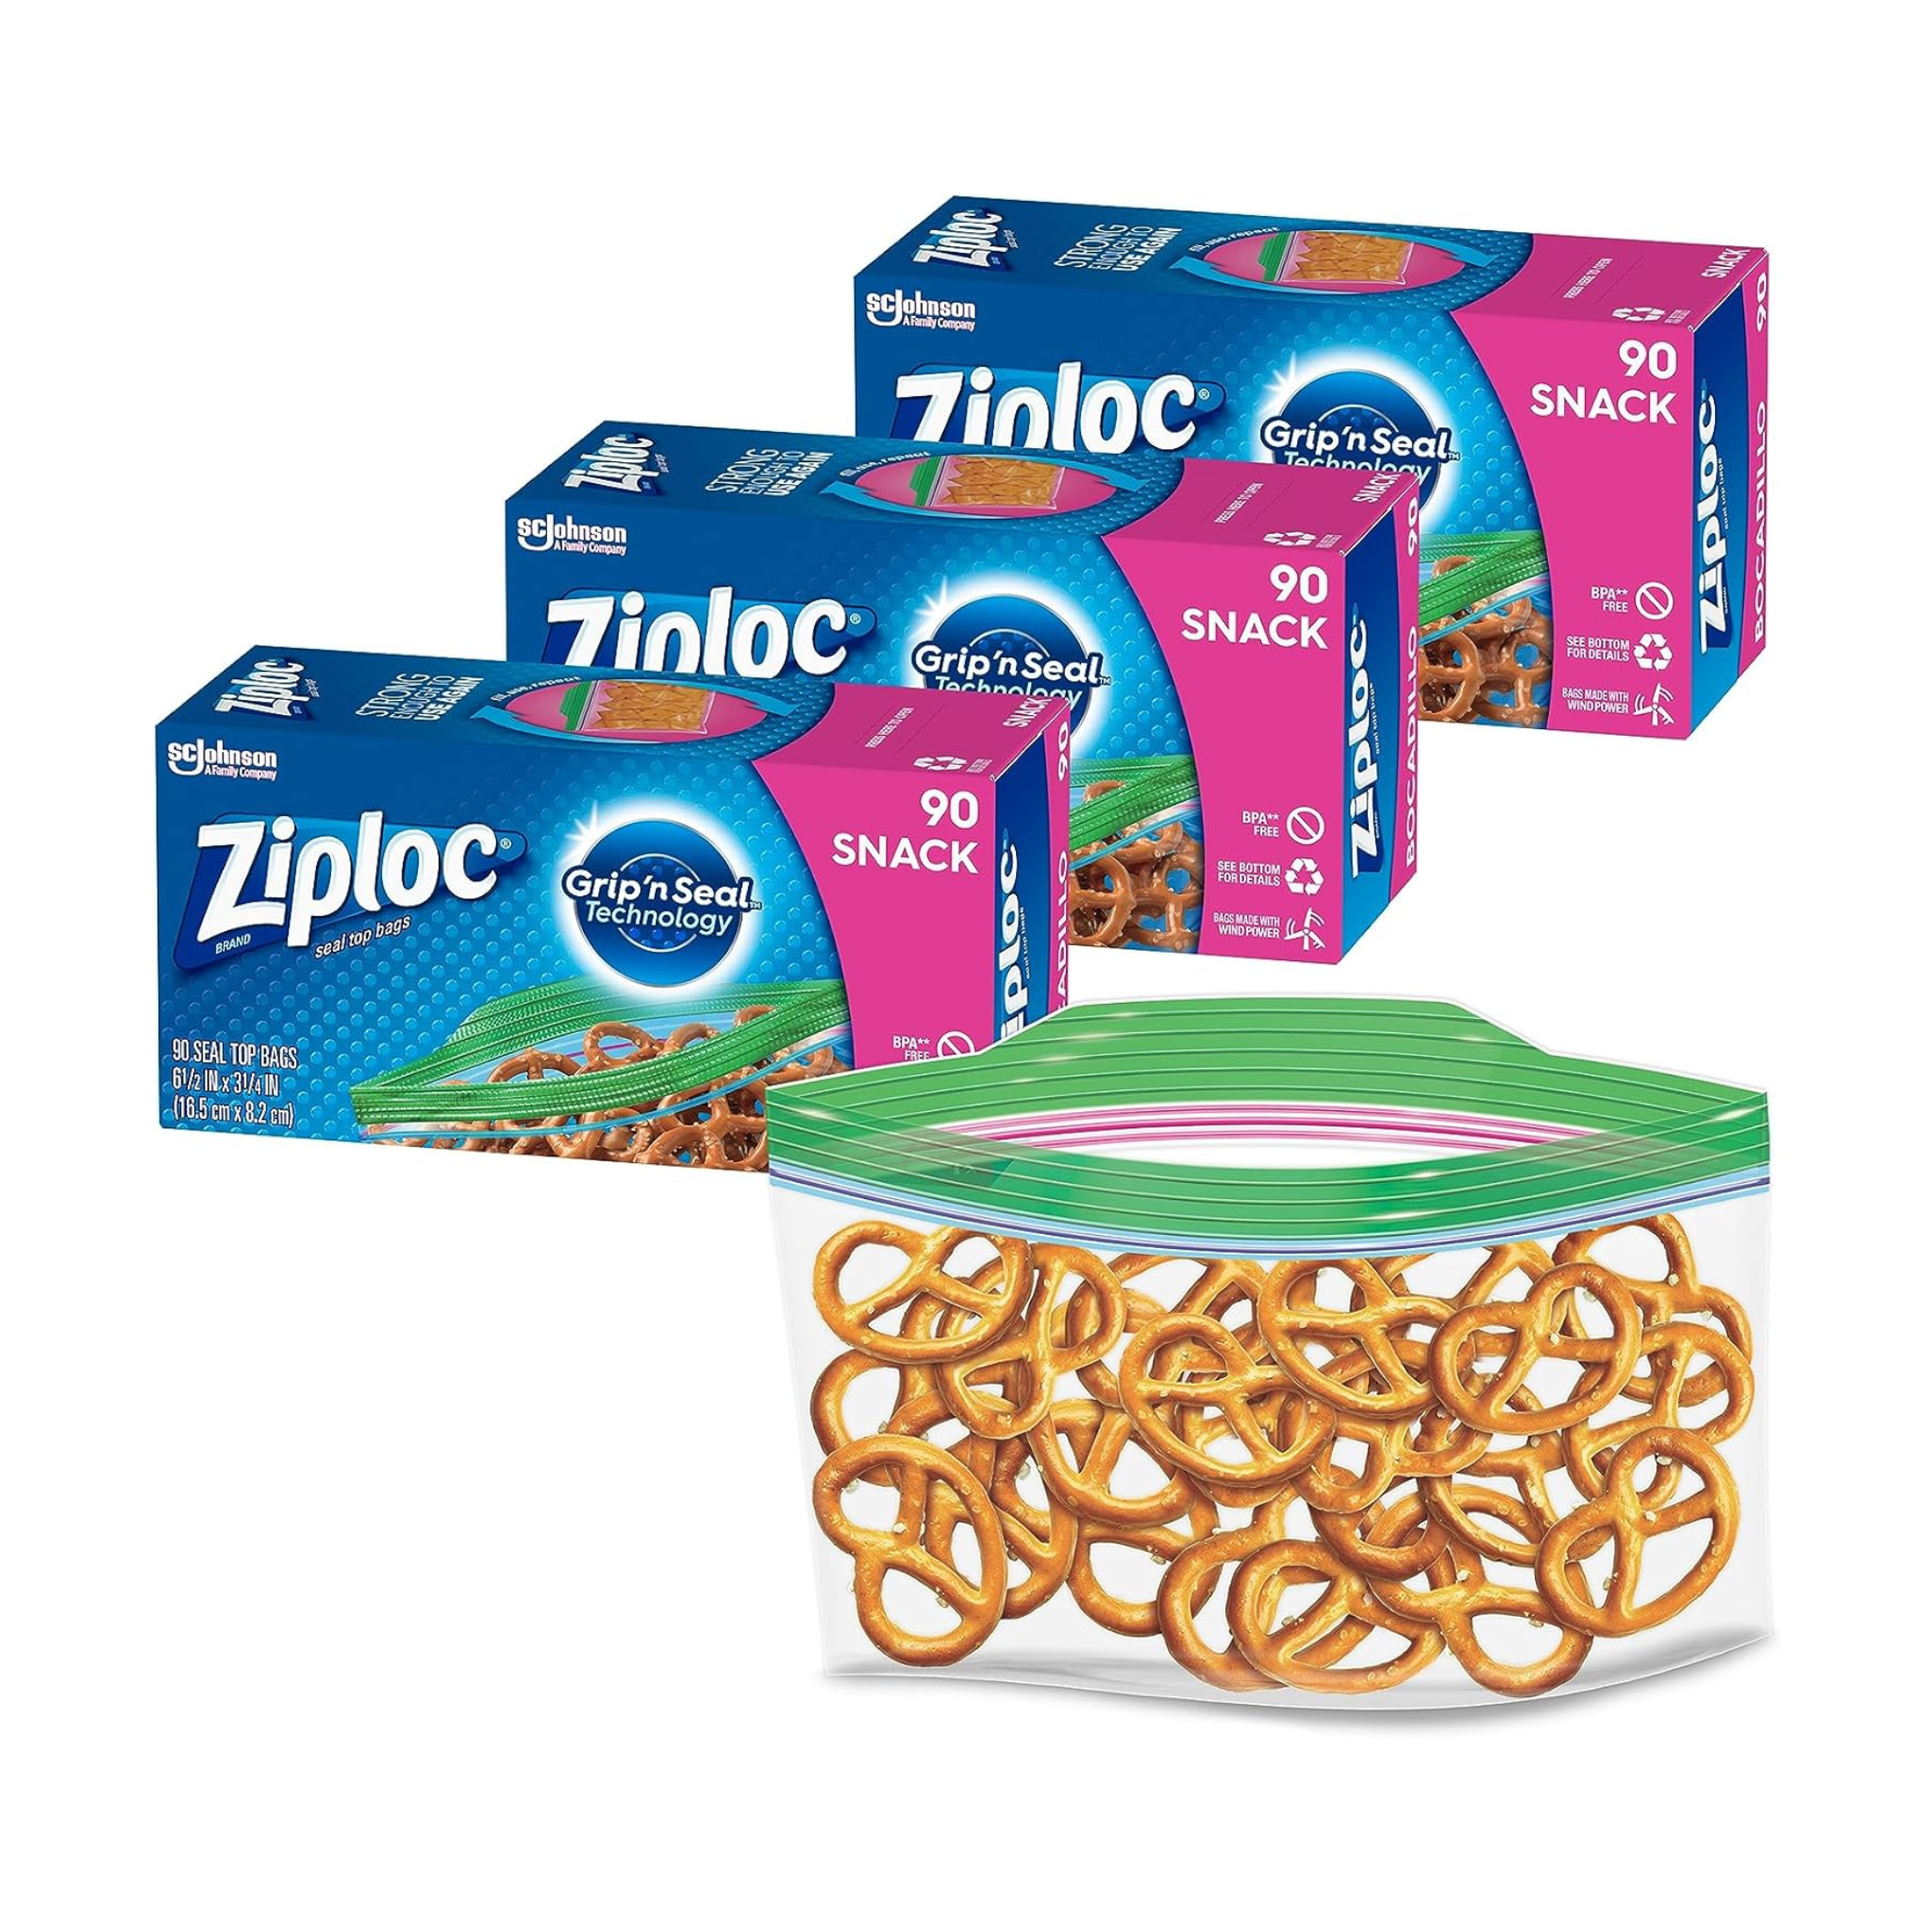 270 Ziploc Food Storage Bags